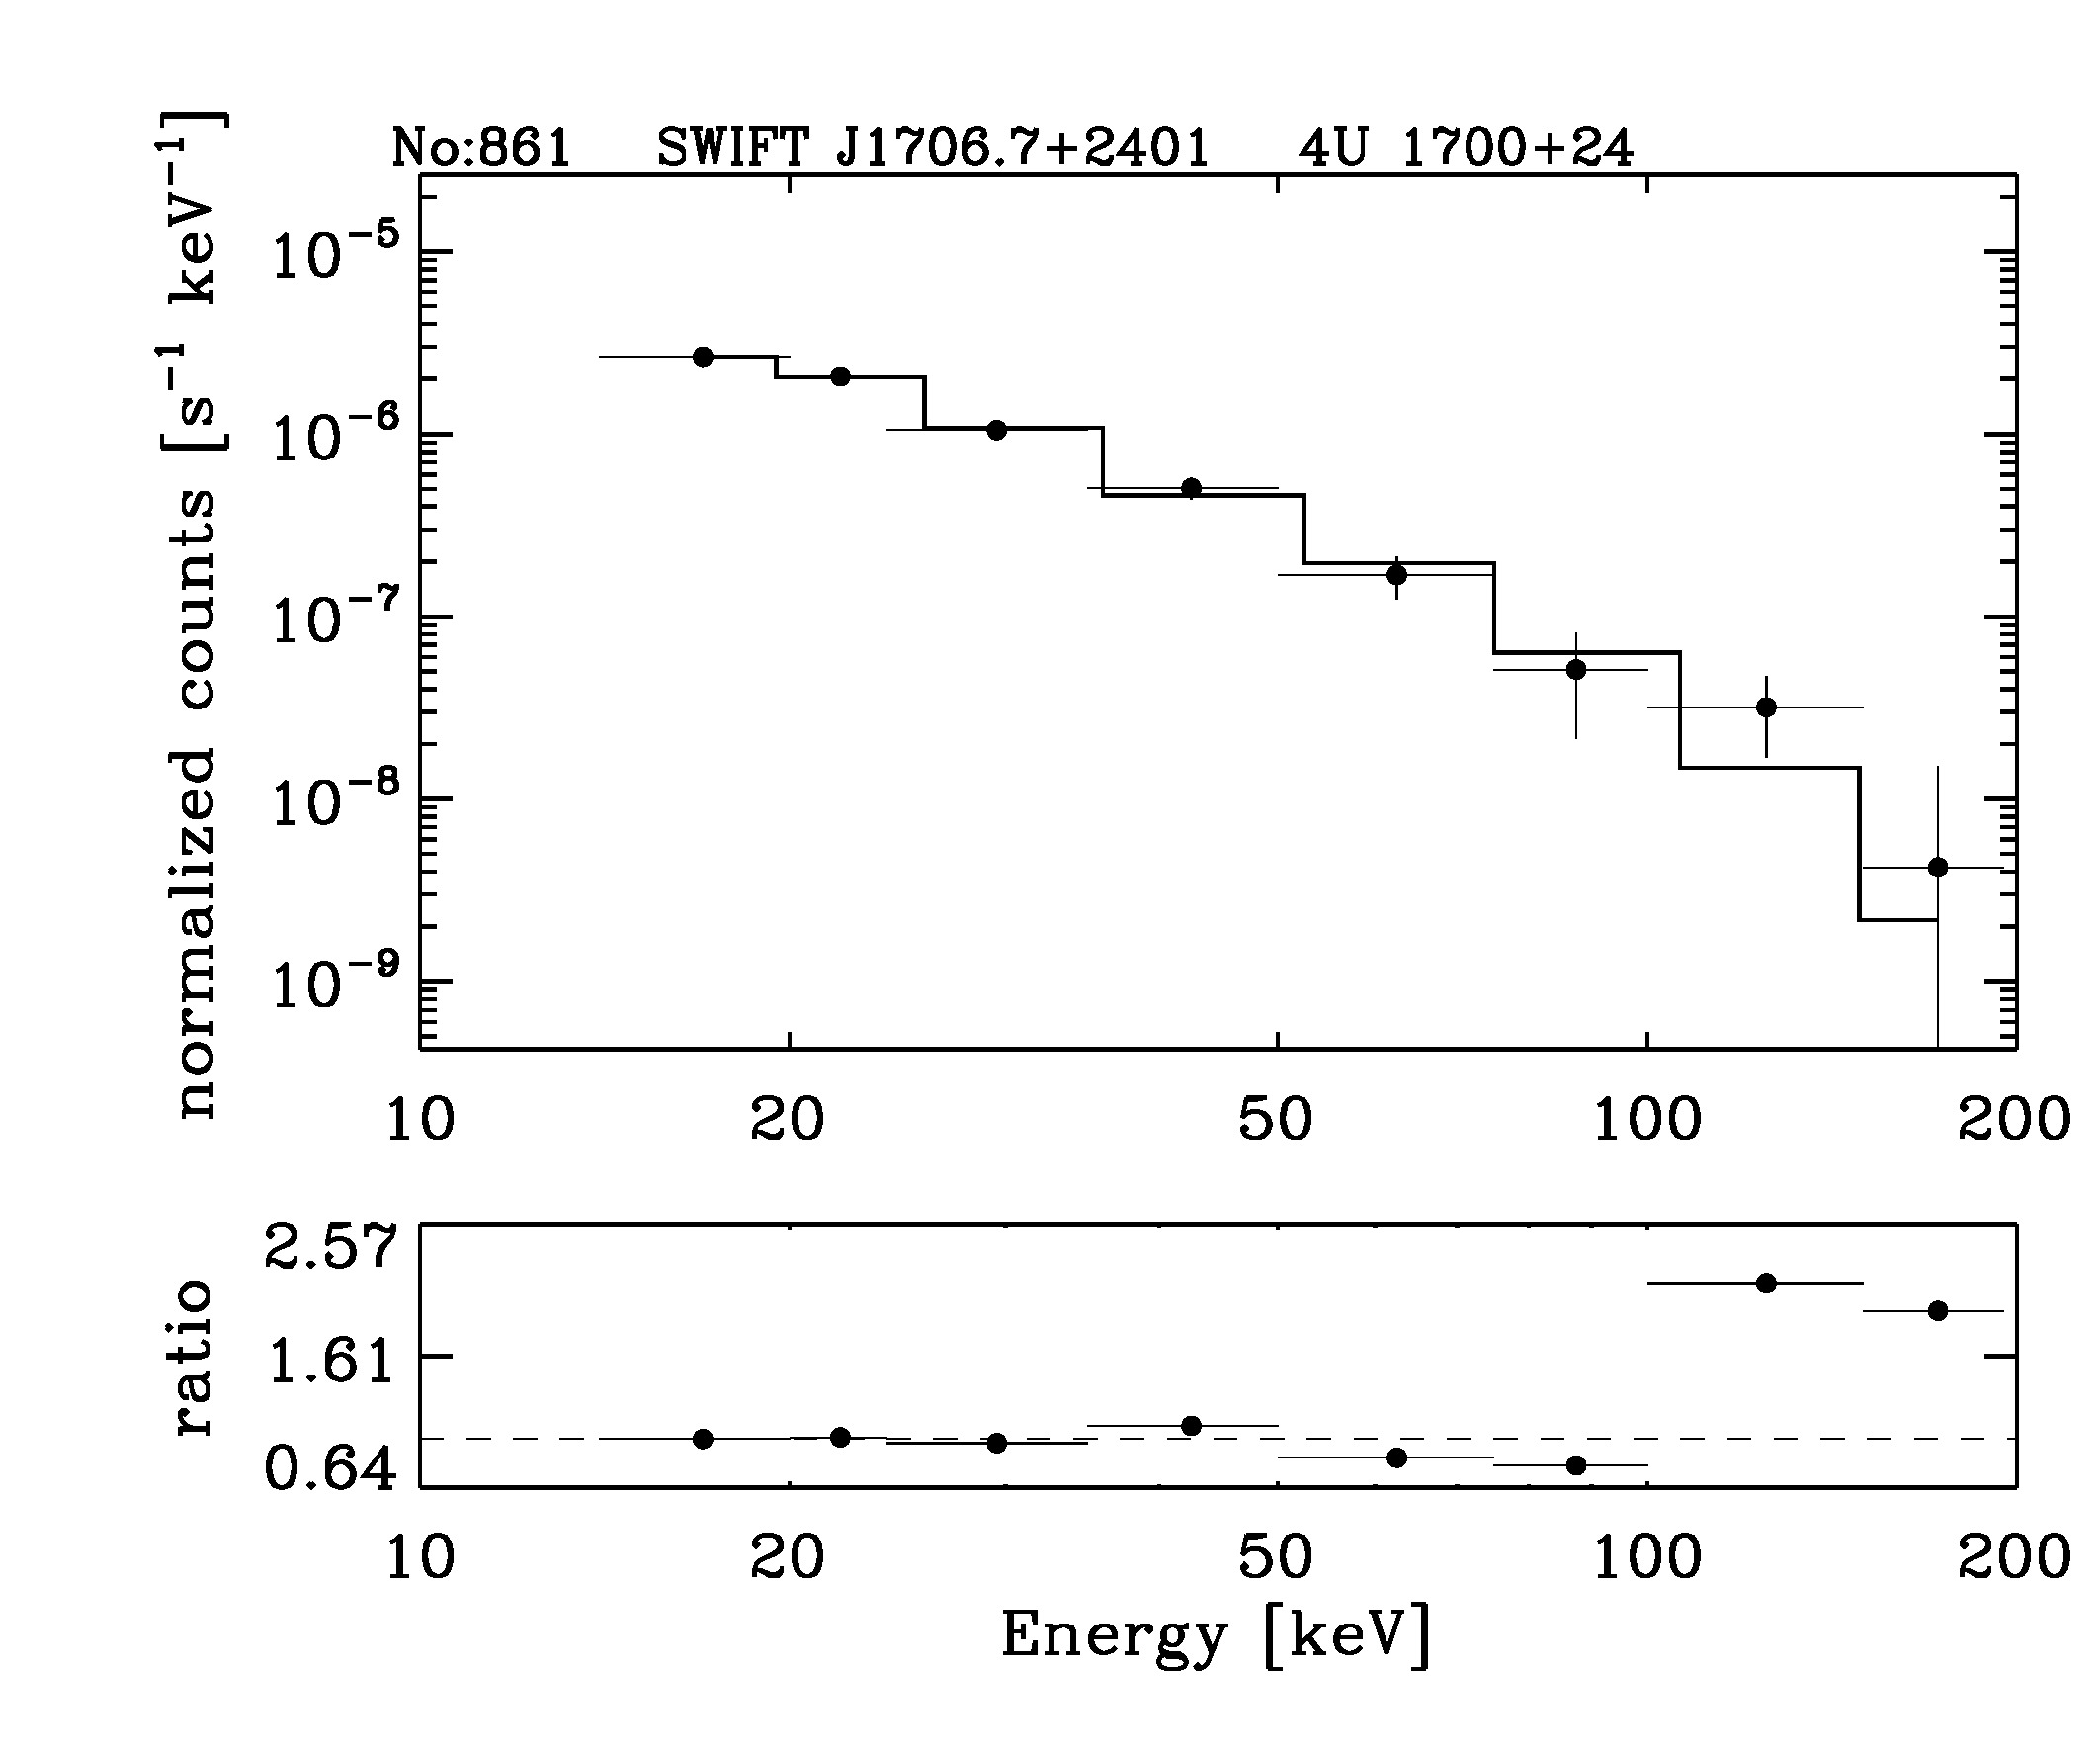 BAT Spectrum for SWIFT J1706.7+2401